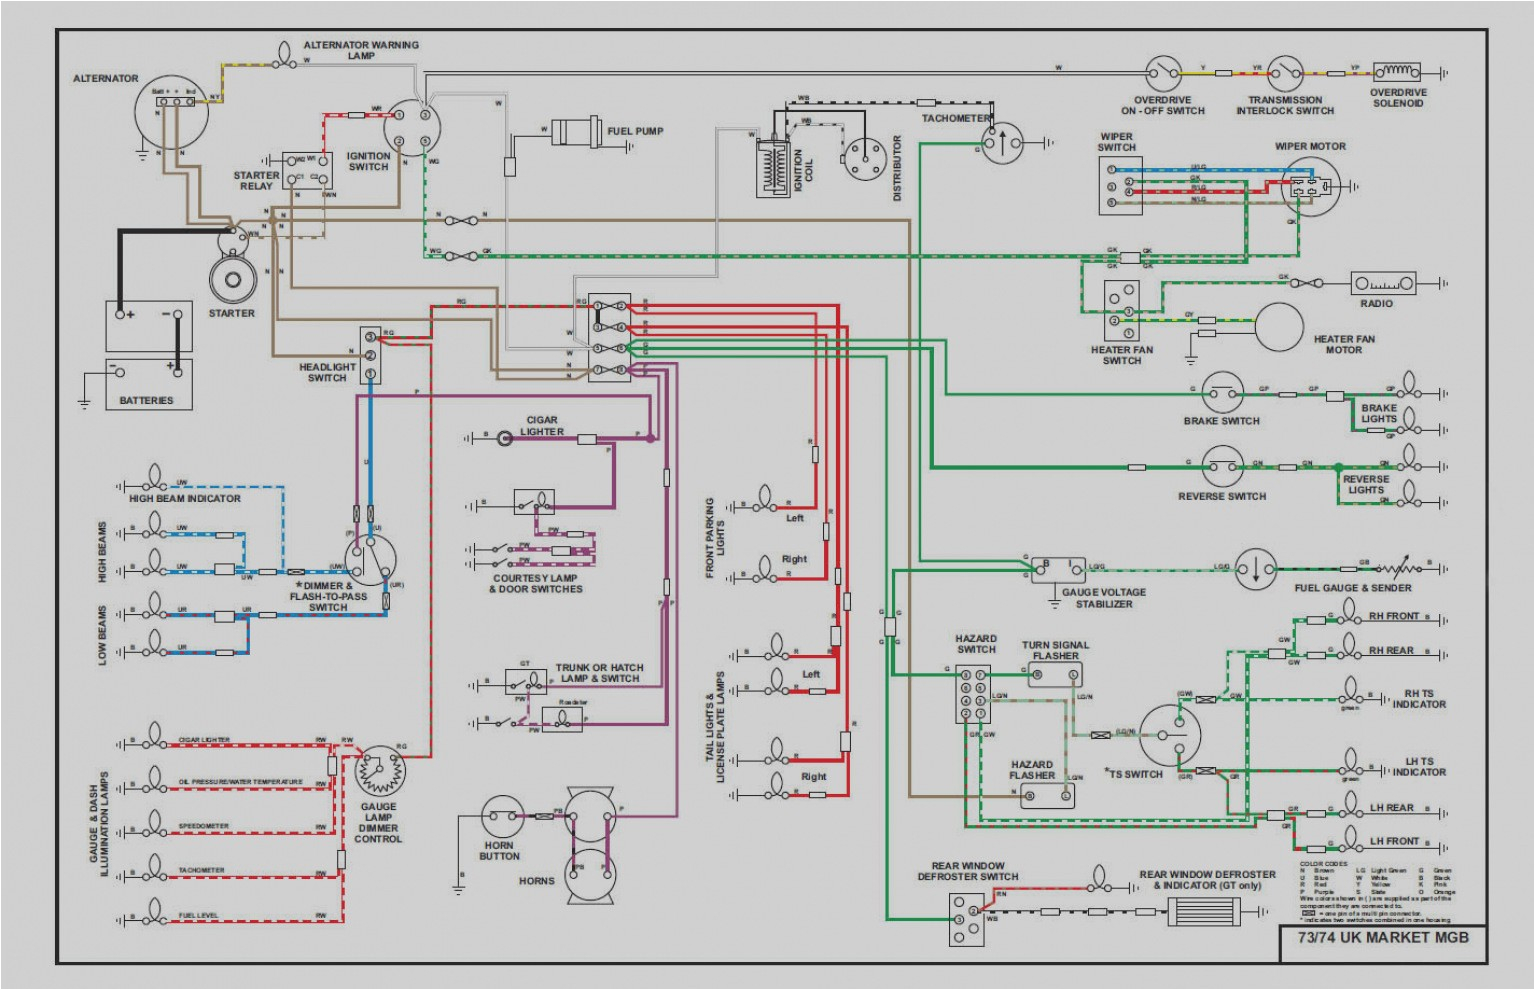 mgc wiring schematic wiring diagram page mgc wiring schematic